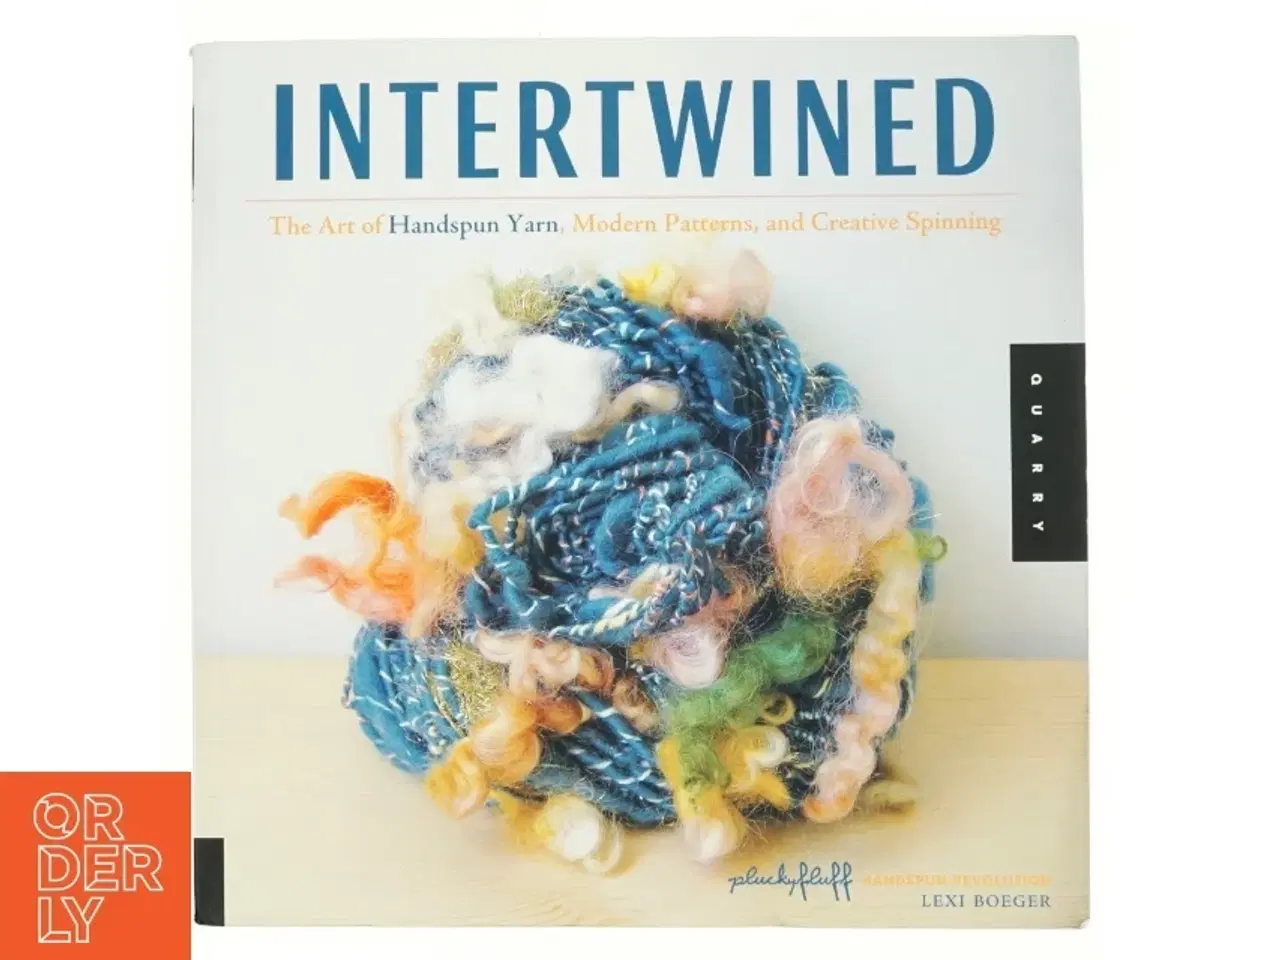 Billede 1 - Intertwined, the art of handspun yarn